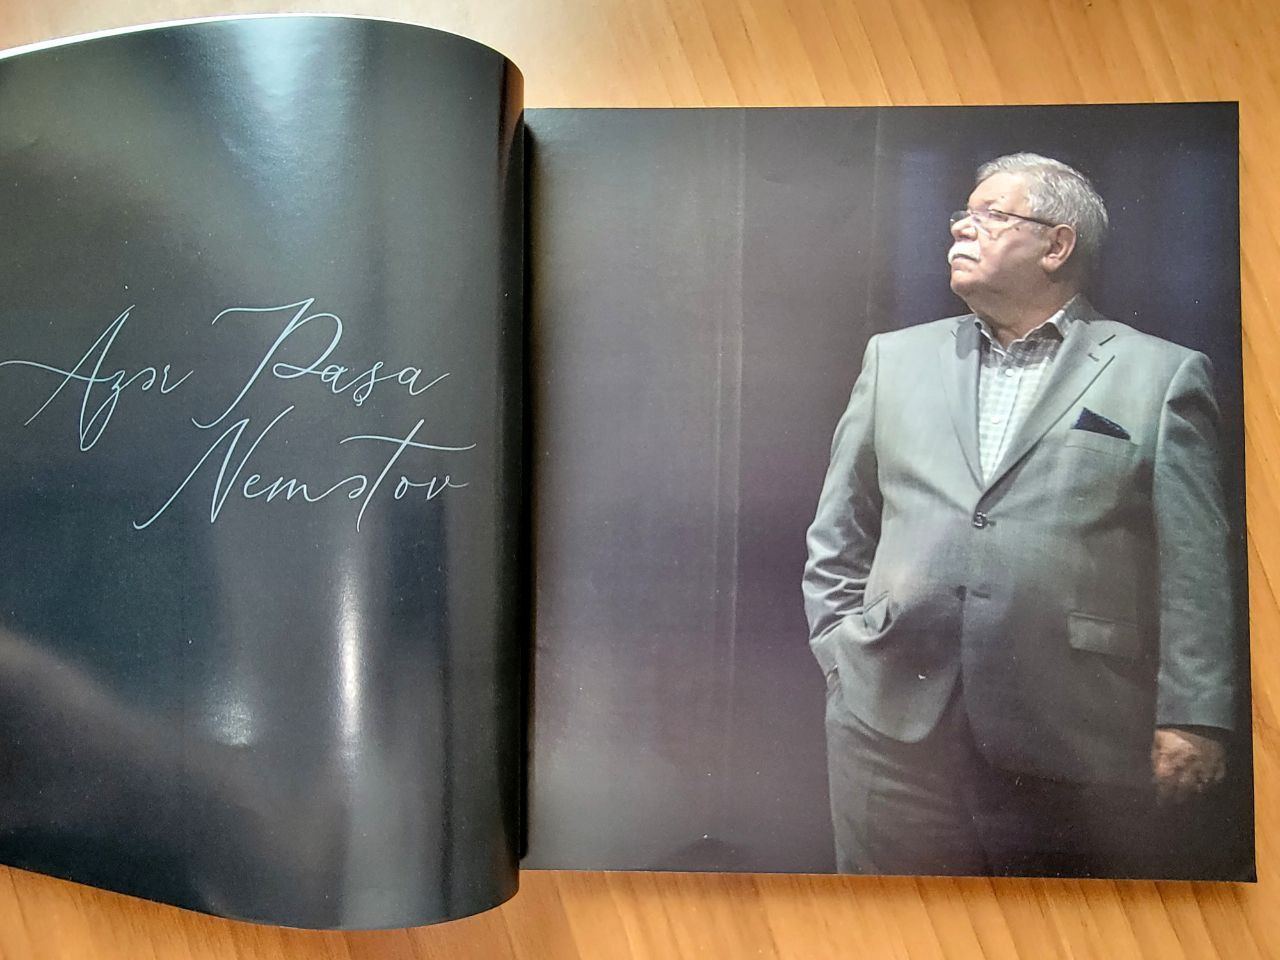 Искусство, жизнь, мысли... - издана книга-альбом, посвященная Азер Паше Нематову (ФОТО)